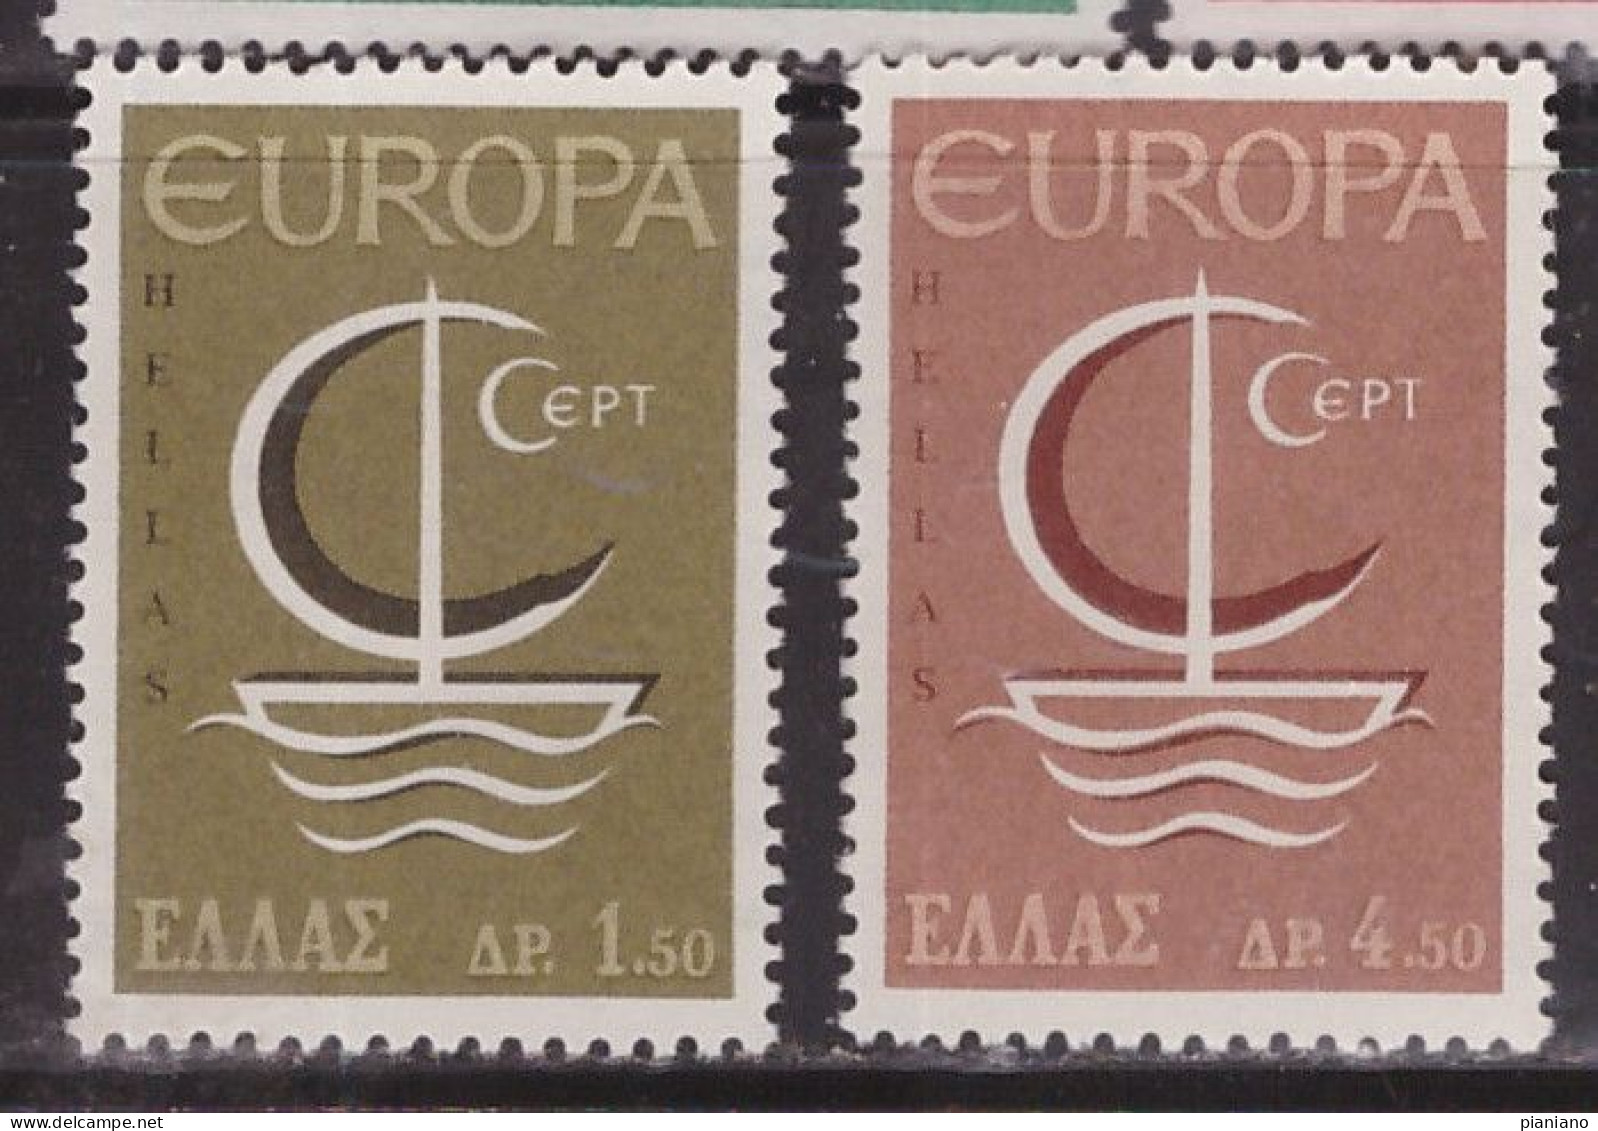 ClasCept+Stato - PIA - GRECIA  - 1966  : Europa  - (Yv  897-98) - 1966